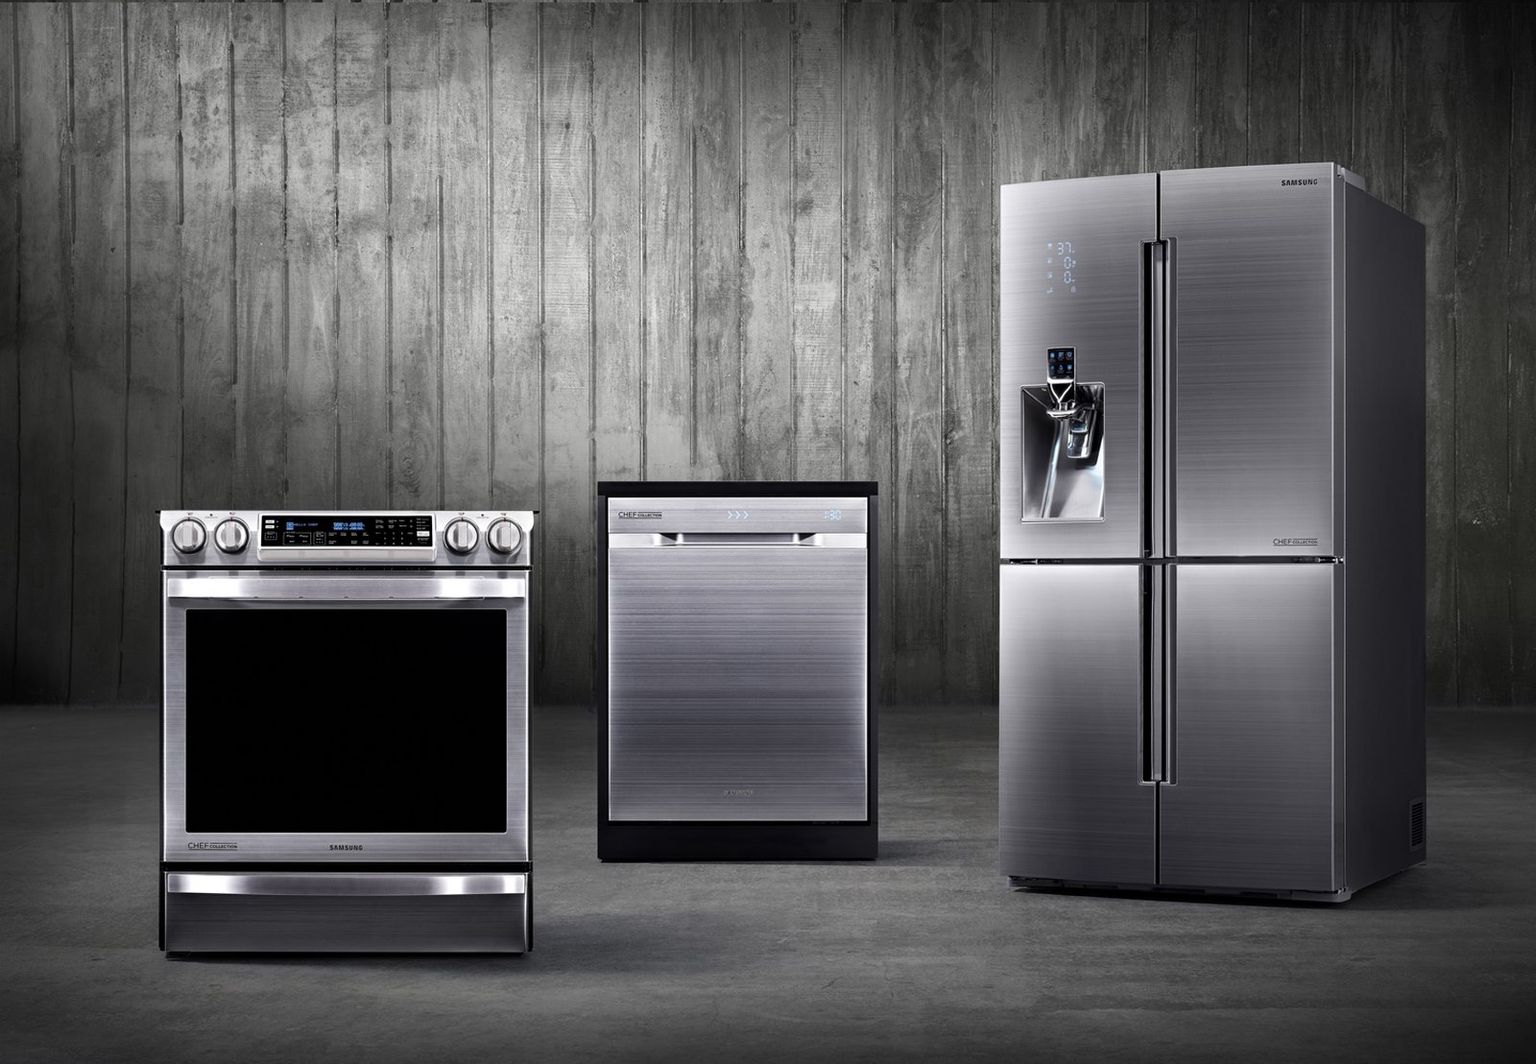 Французская бытовая техника. Samsung Appliances. Samsung холодильник Chef collection. Кухня с бытовой техникой. Крупная бытовая техник.